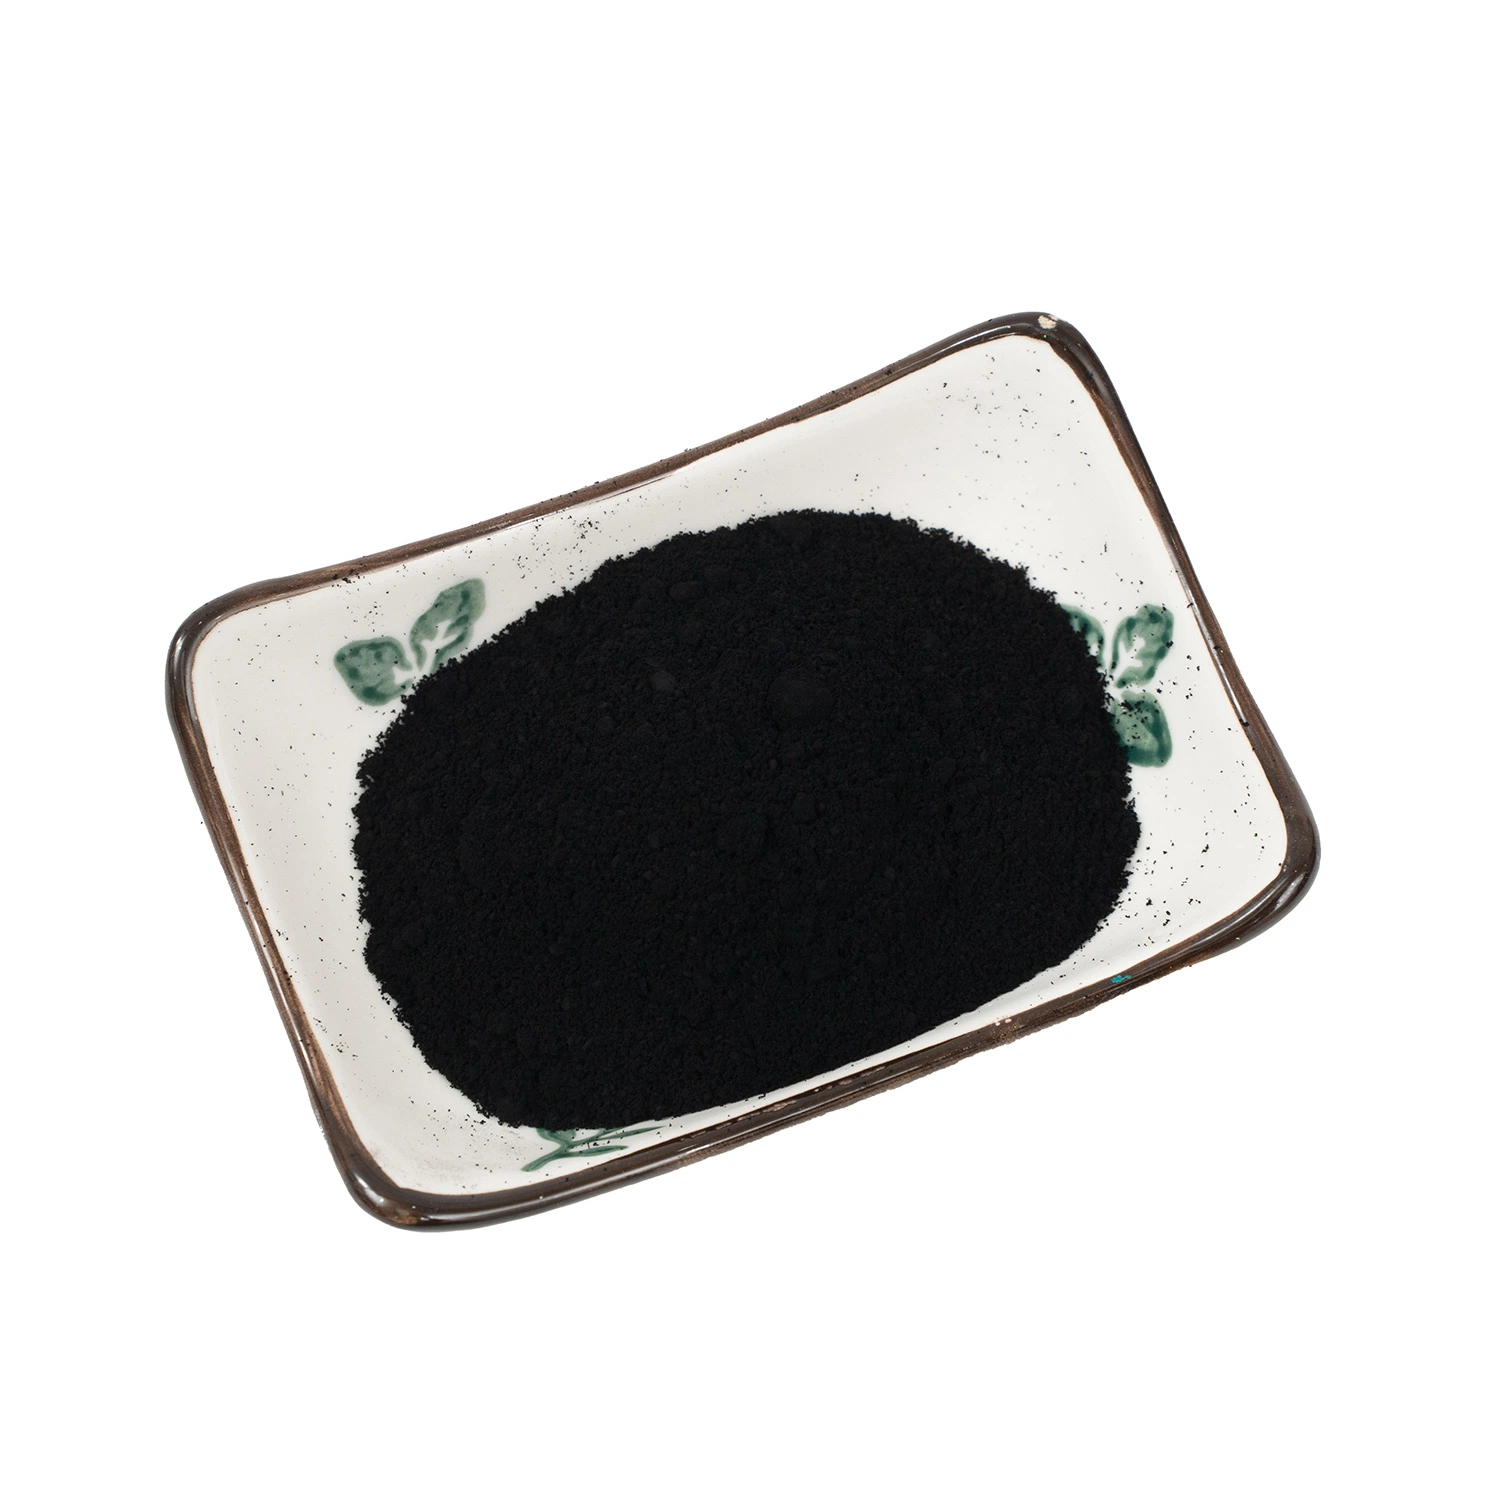 سعر جيد والمواد الخام عالية الجودة الكربون الأسود N330 CAS 1333-86-4 أسود الكربون الصناعي الدرجة.